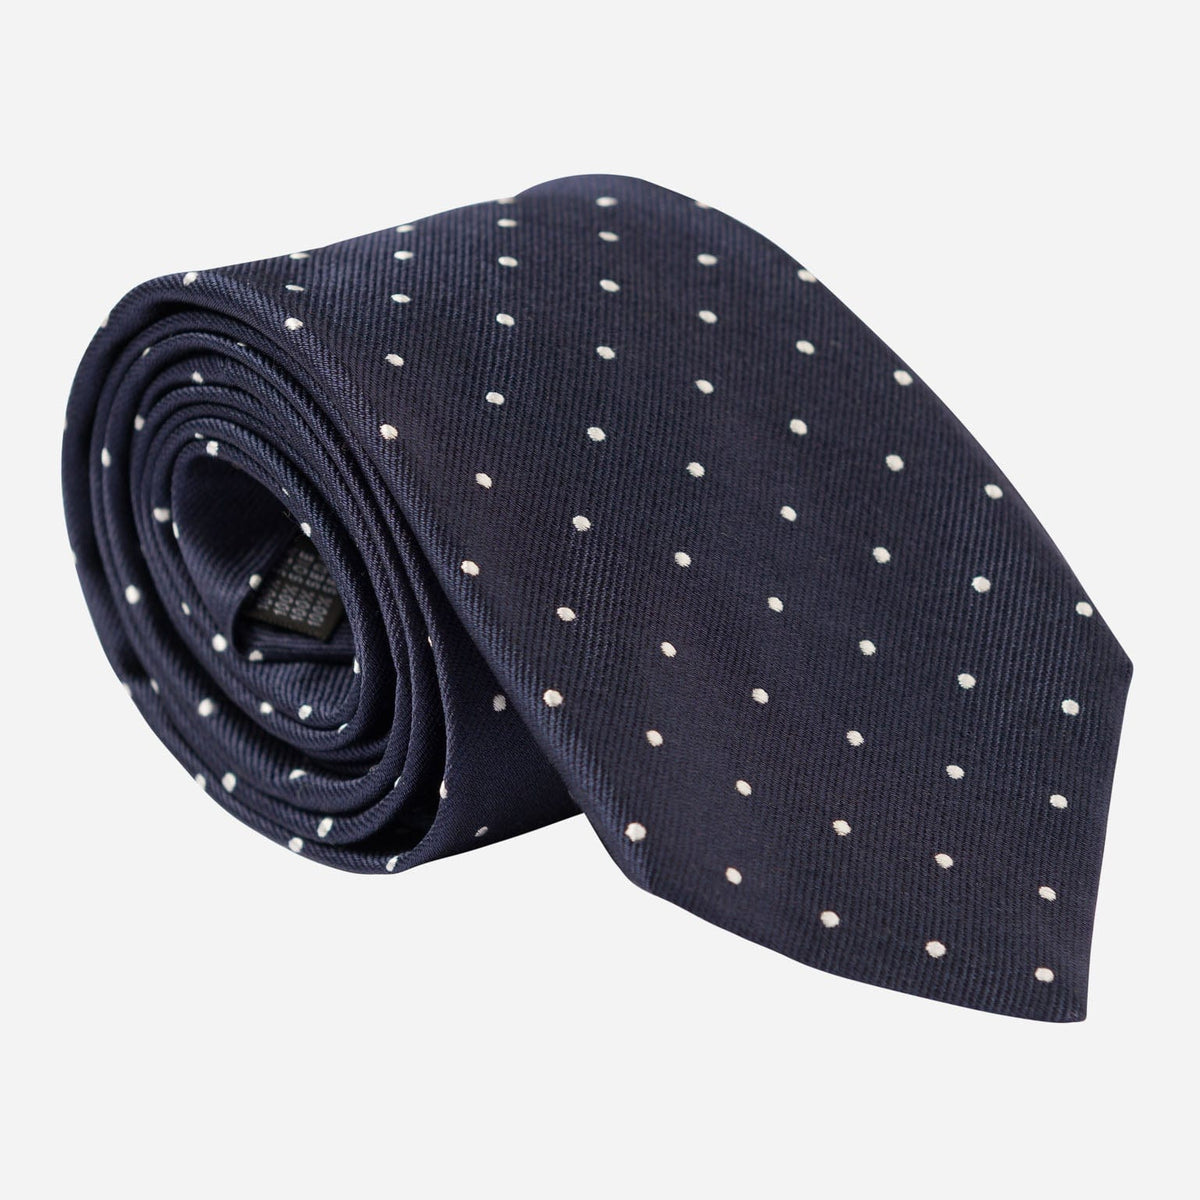 Extra Long Navy Blue Italian Silk Tie - Polka Dots